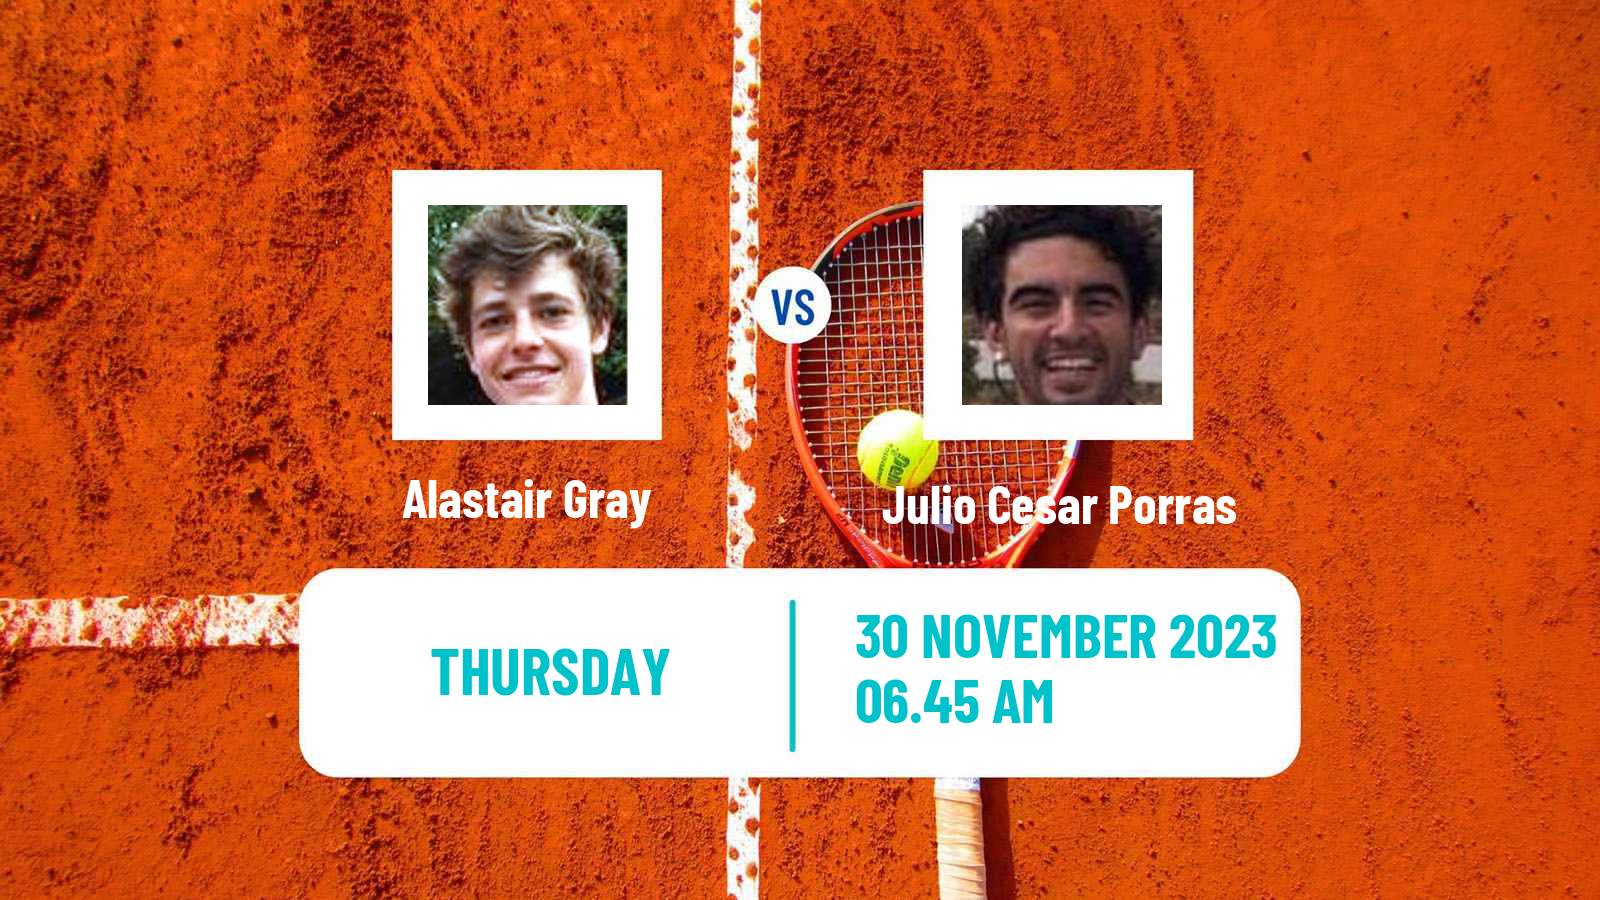 Tennis ITF M15 Madrid 2 Men Alastair Gray - Julio Cesar Porras